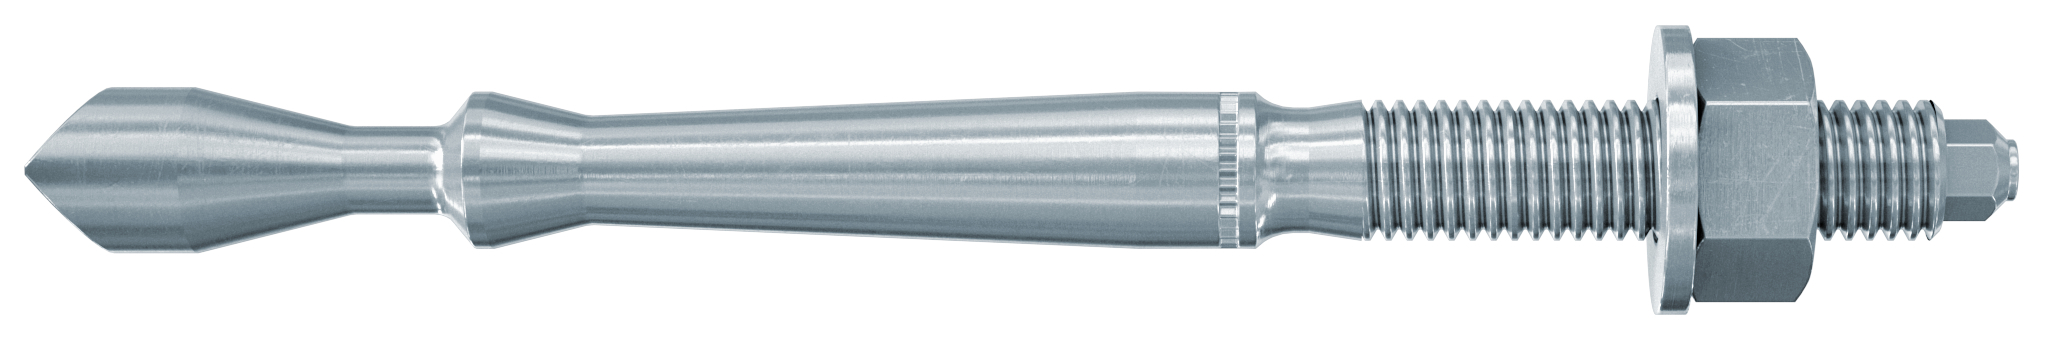 fischer Barra multicono in acciaio FHB II-A L M8x60/10 per ancorante chimico FIS HB (1 Pz.) Barra multicono lunga in acciaio zincato classe 8.8. Massime prestazioni a trazione in calcestruzzo fessurato e a ridotte distanze dai bordi..